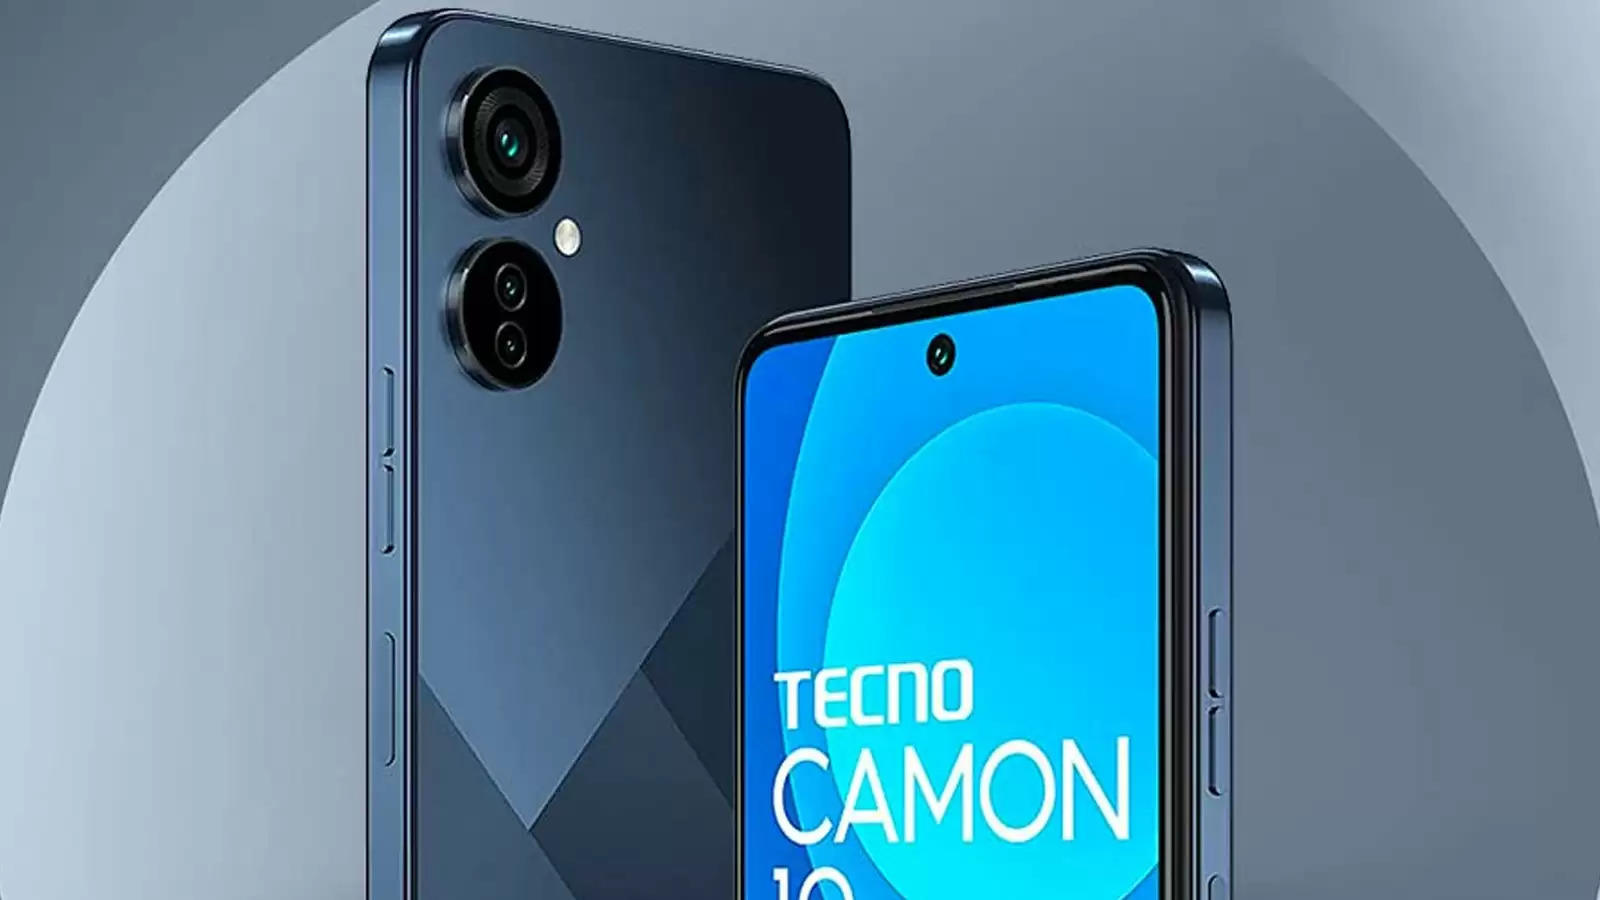 43 फीसदी छूट के साथ खरीदें TECNO का धांसू स्मार्टफोन, मिल रहा छप्परफाड़ डिस्काउंट 